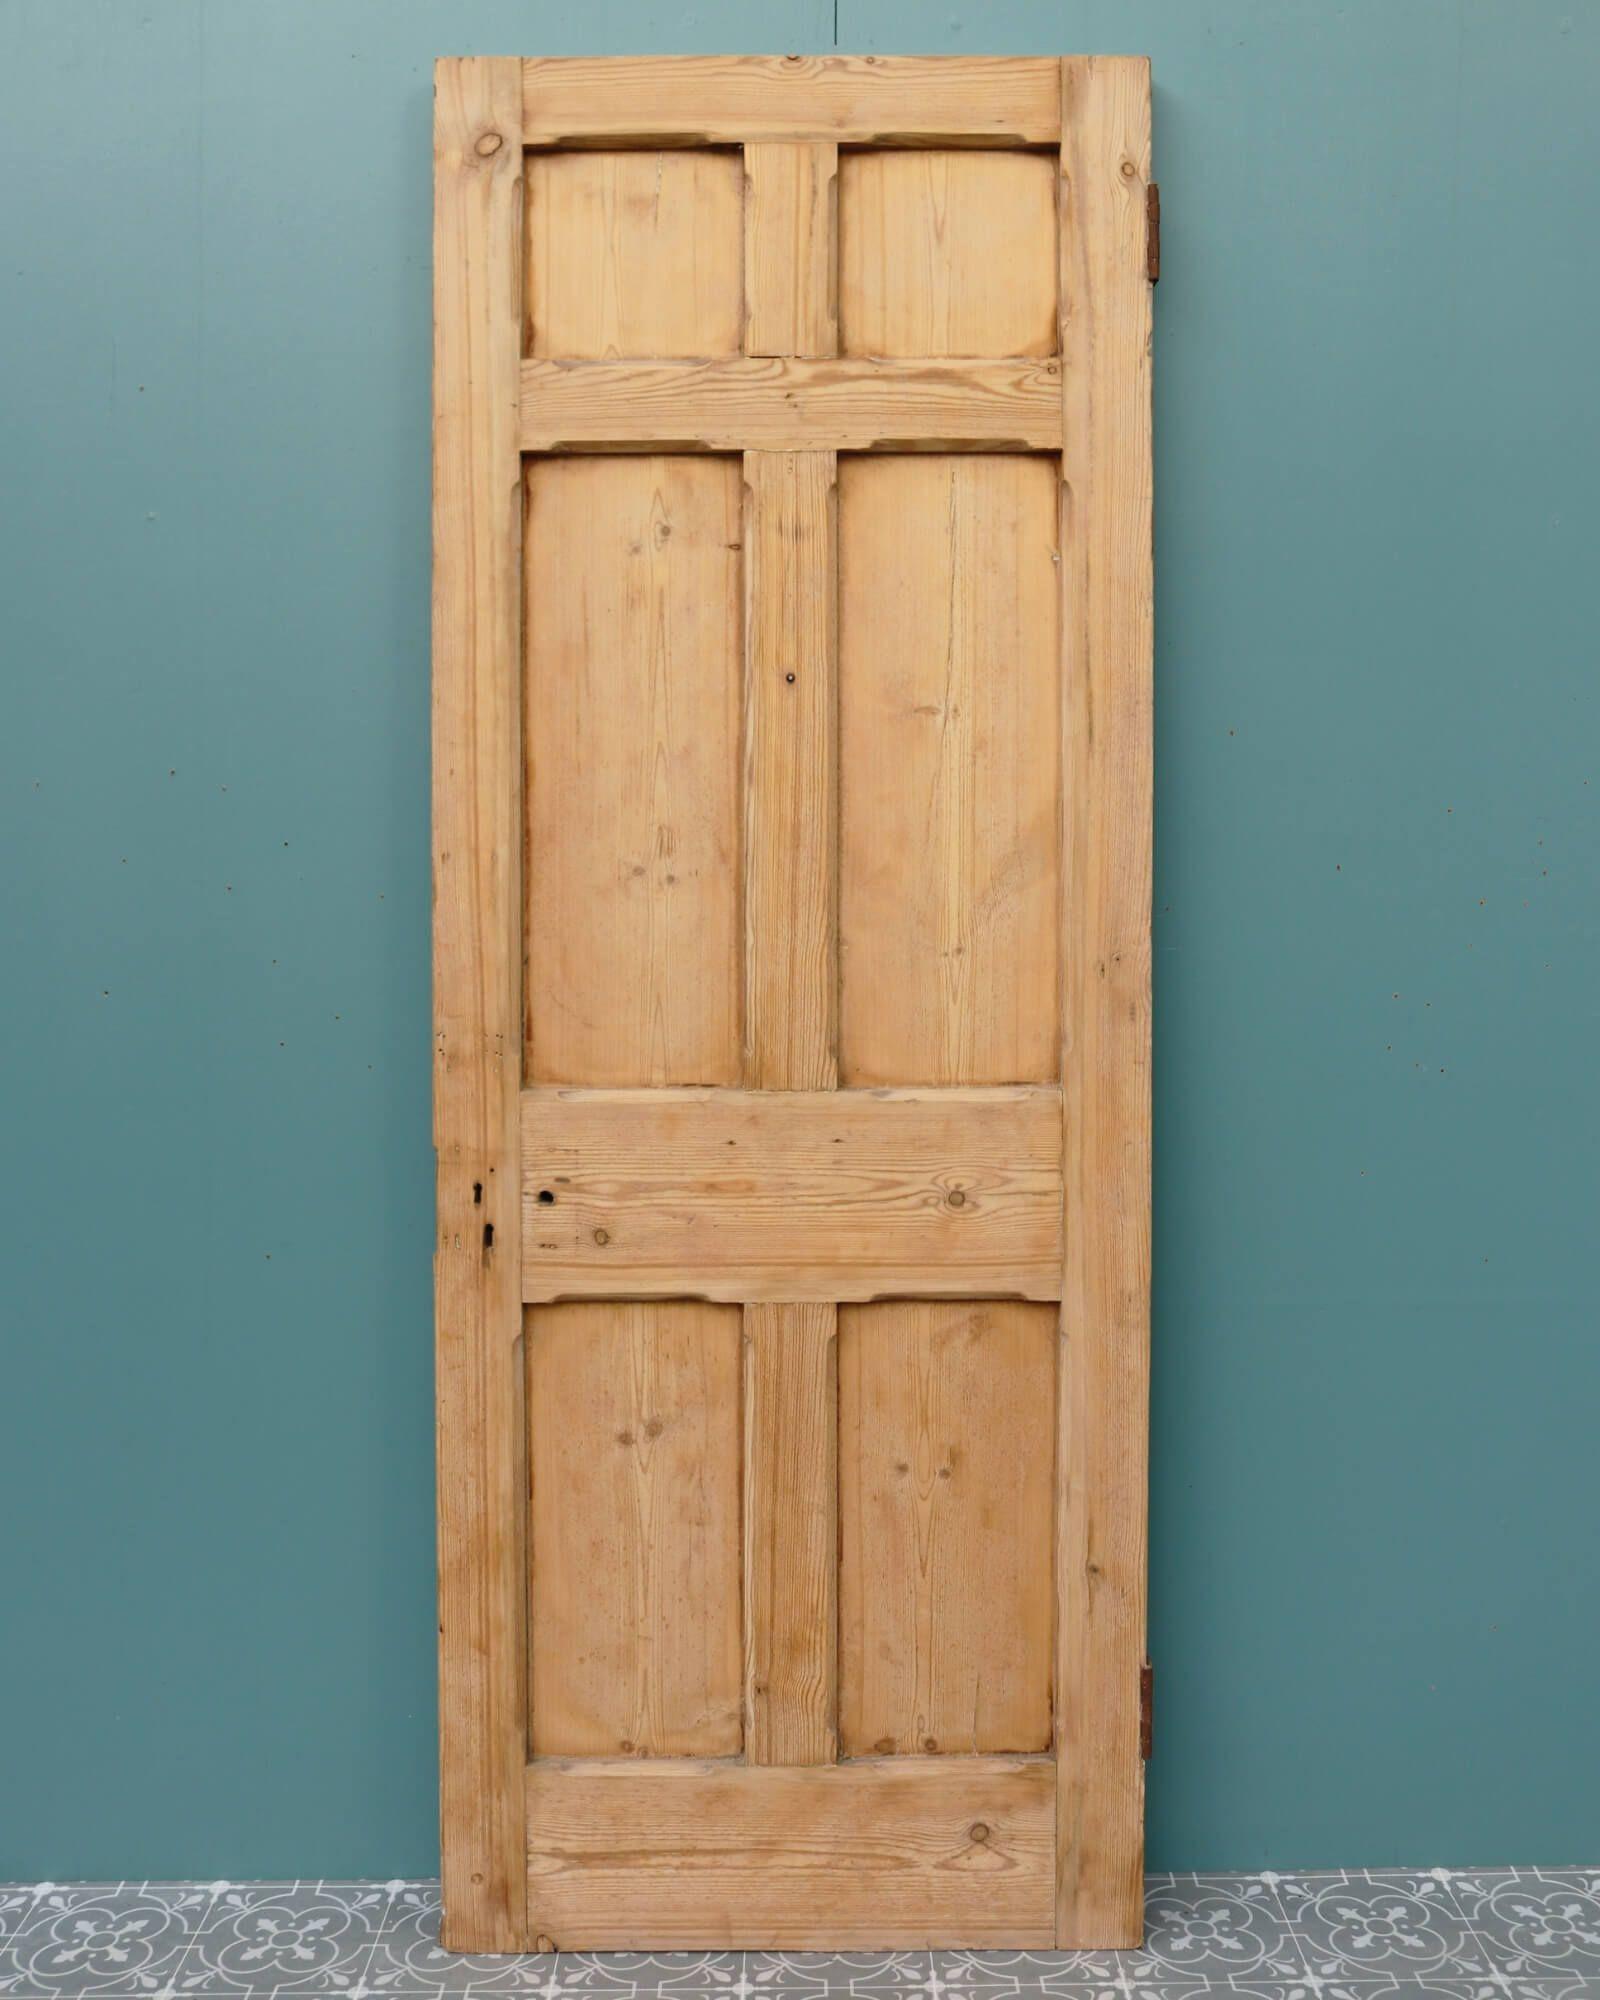 six panel internal door